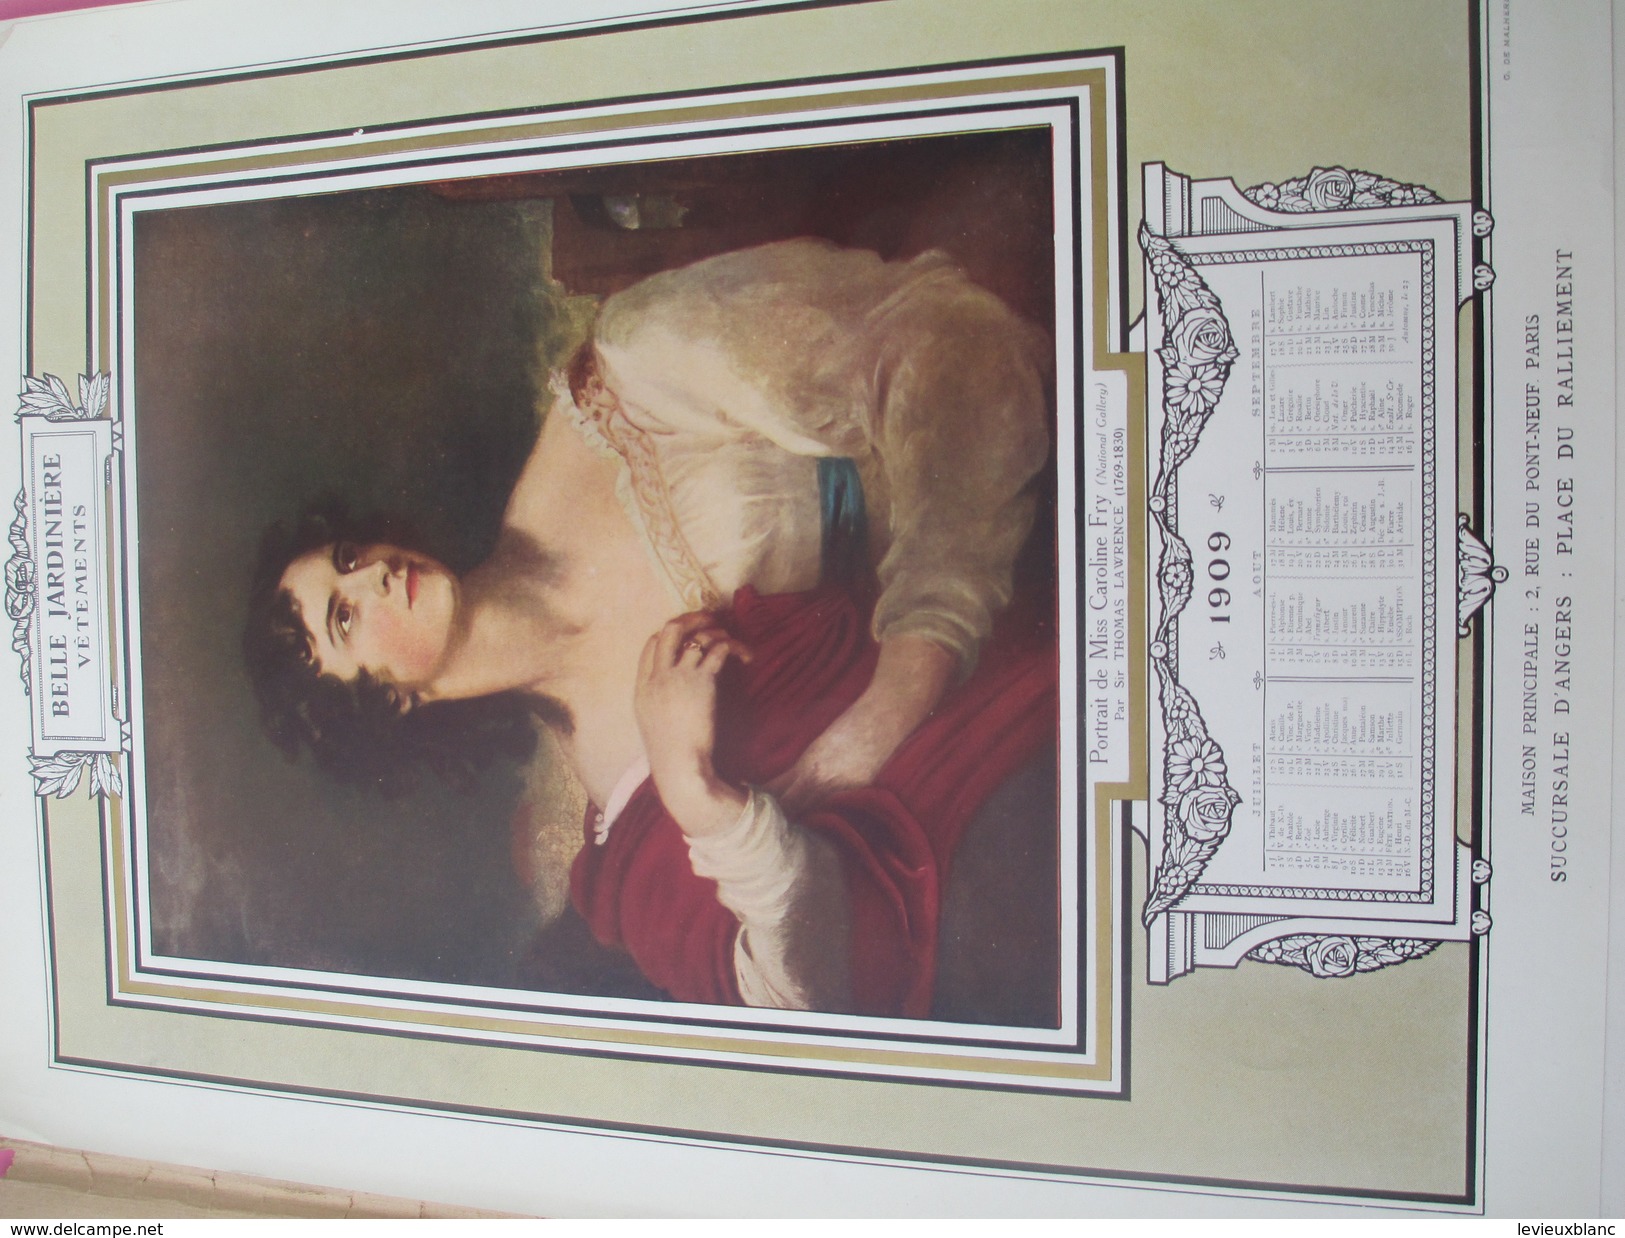 Calendrier de Luxe très grand format/offert par la BELLE JARDINIERE/Chefs d'oeuvre de la Peinture/Angers/1909 CAL382